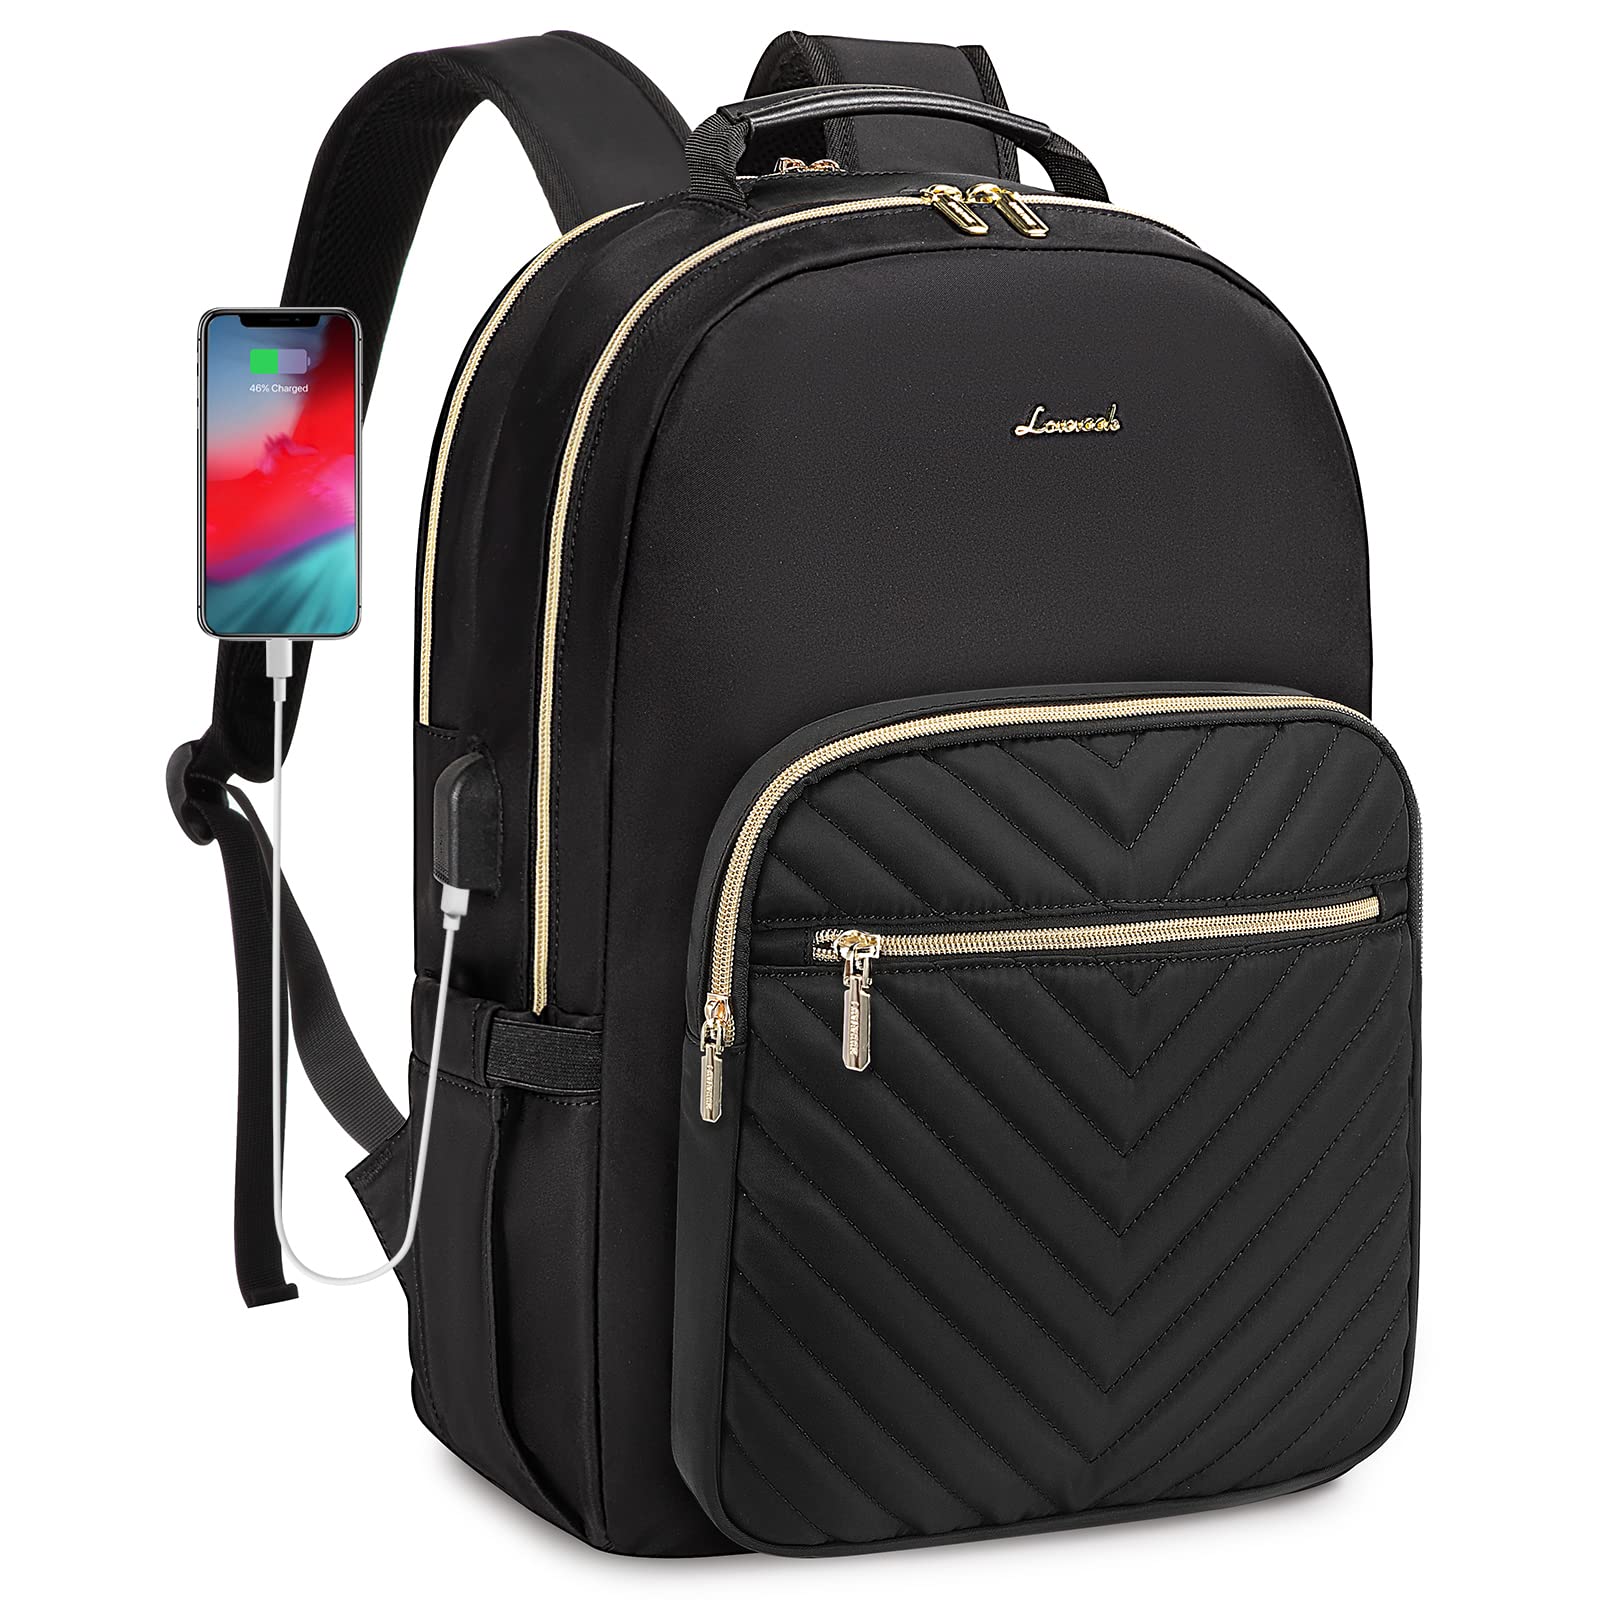 送料無料LOVEVOOK Laptop Backpack for Women Large Capacity Travel Computer Work Bag with 17-inch Laptop Compartment Busi